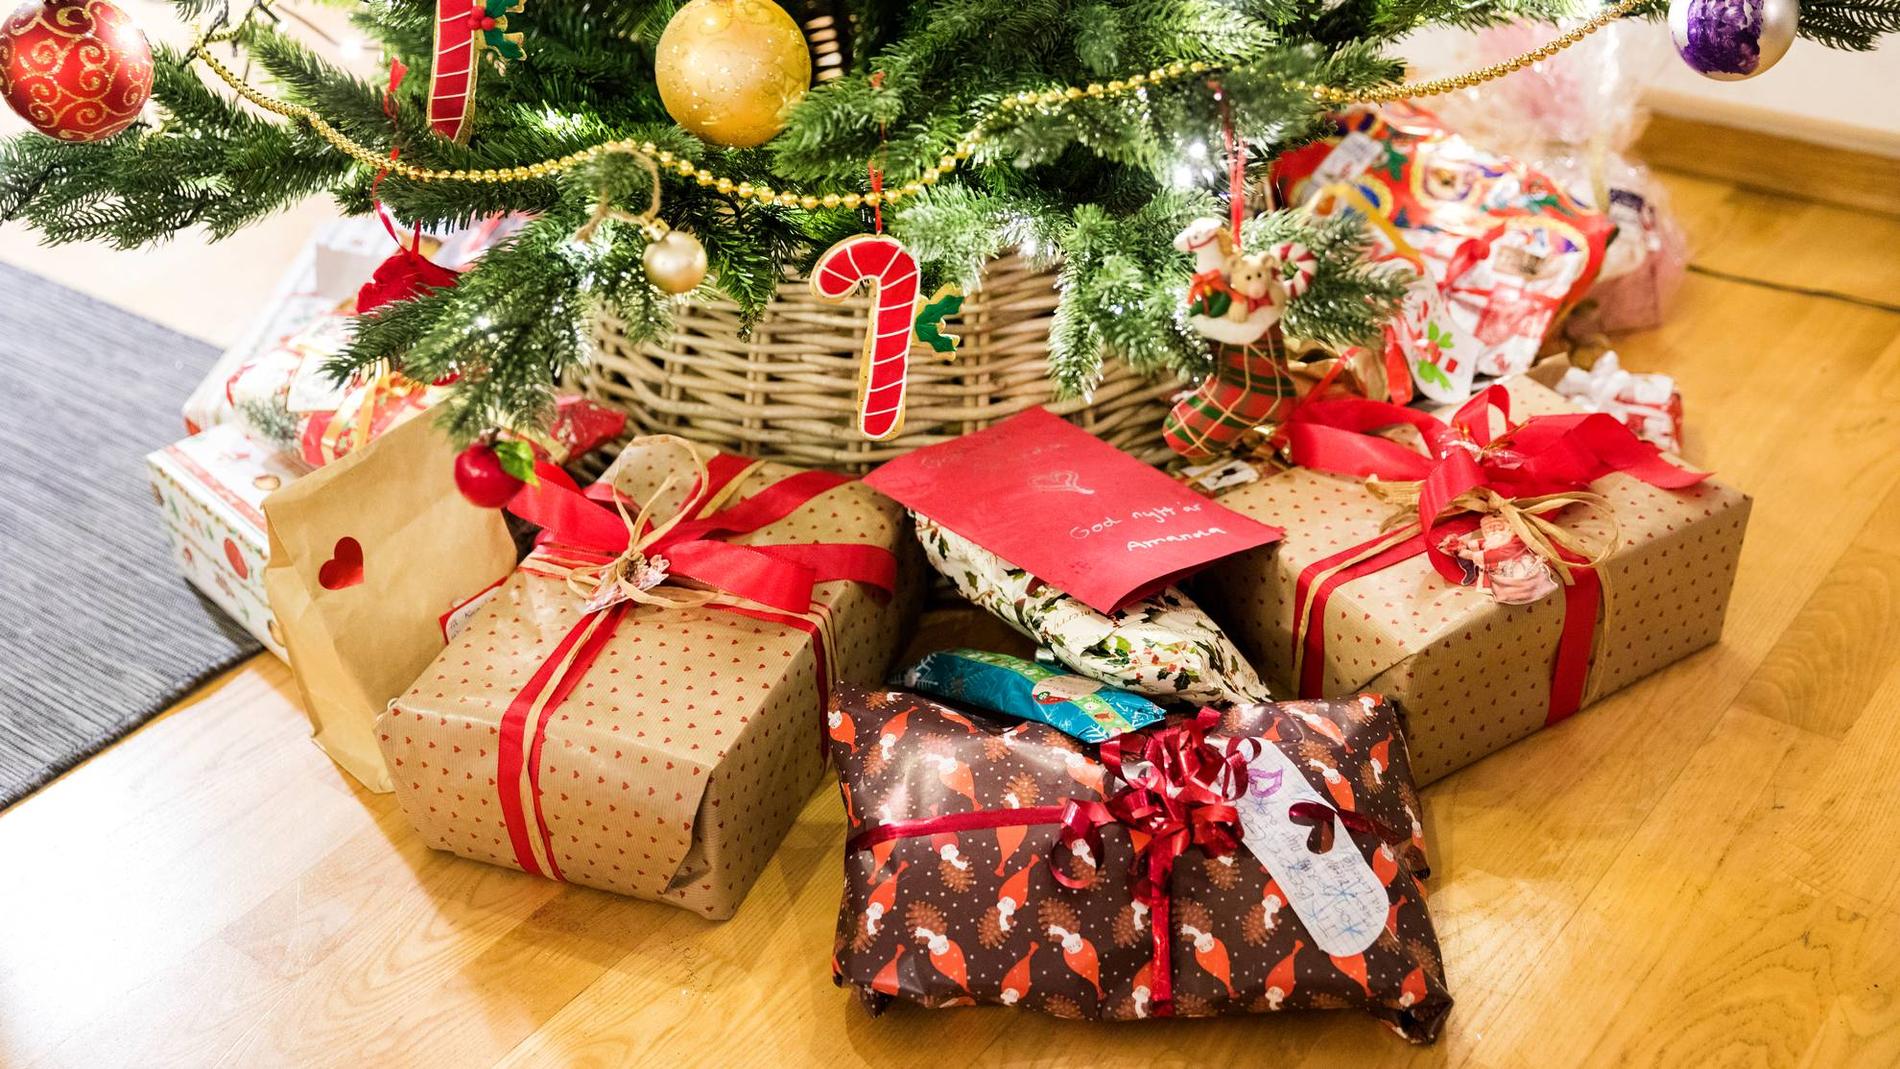 Tradisjonen om å gi faktiske ting i julegave til andre står fremdeles fjellstøtt. 